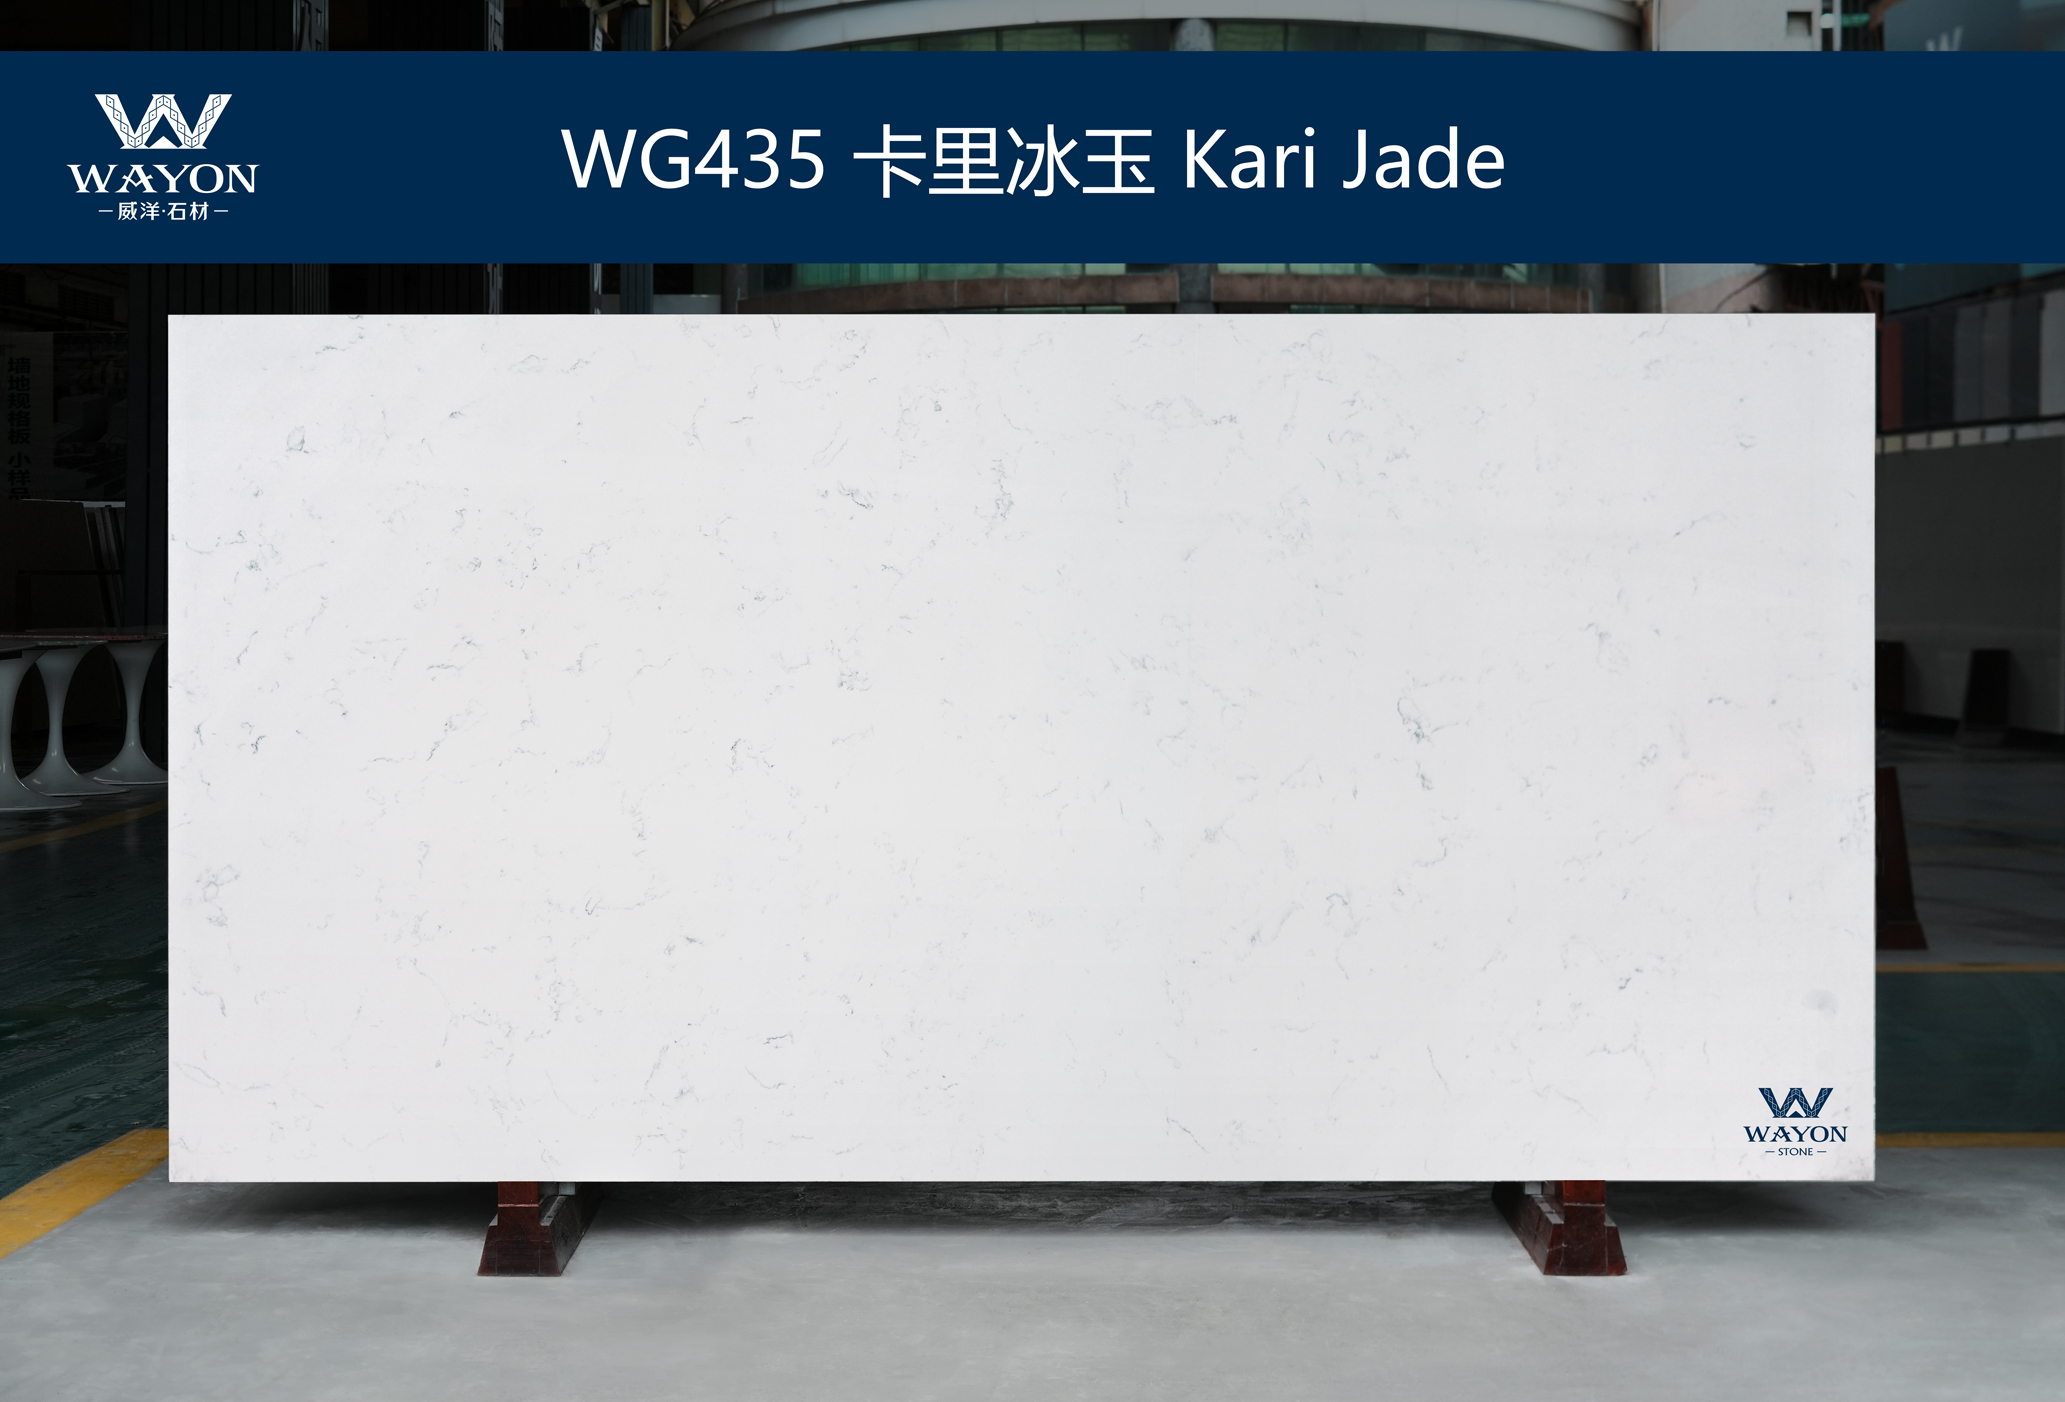 WG435 Kari Jade